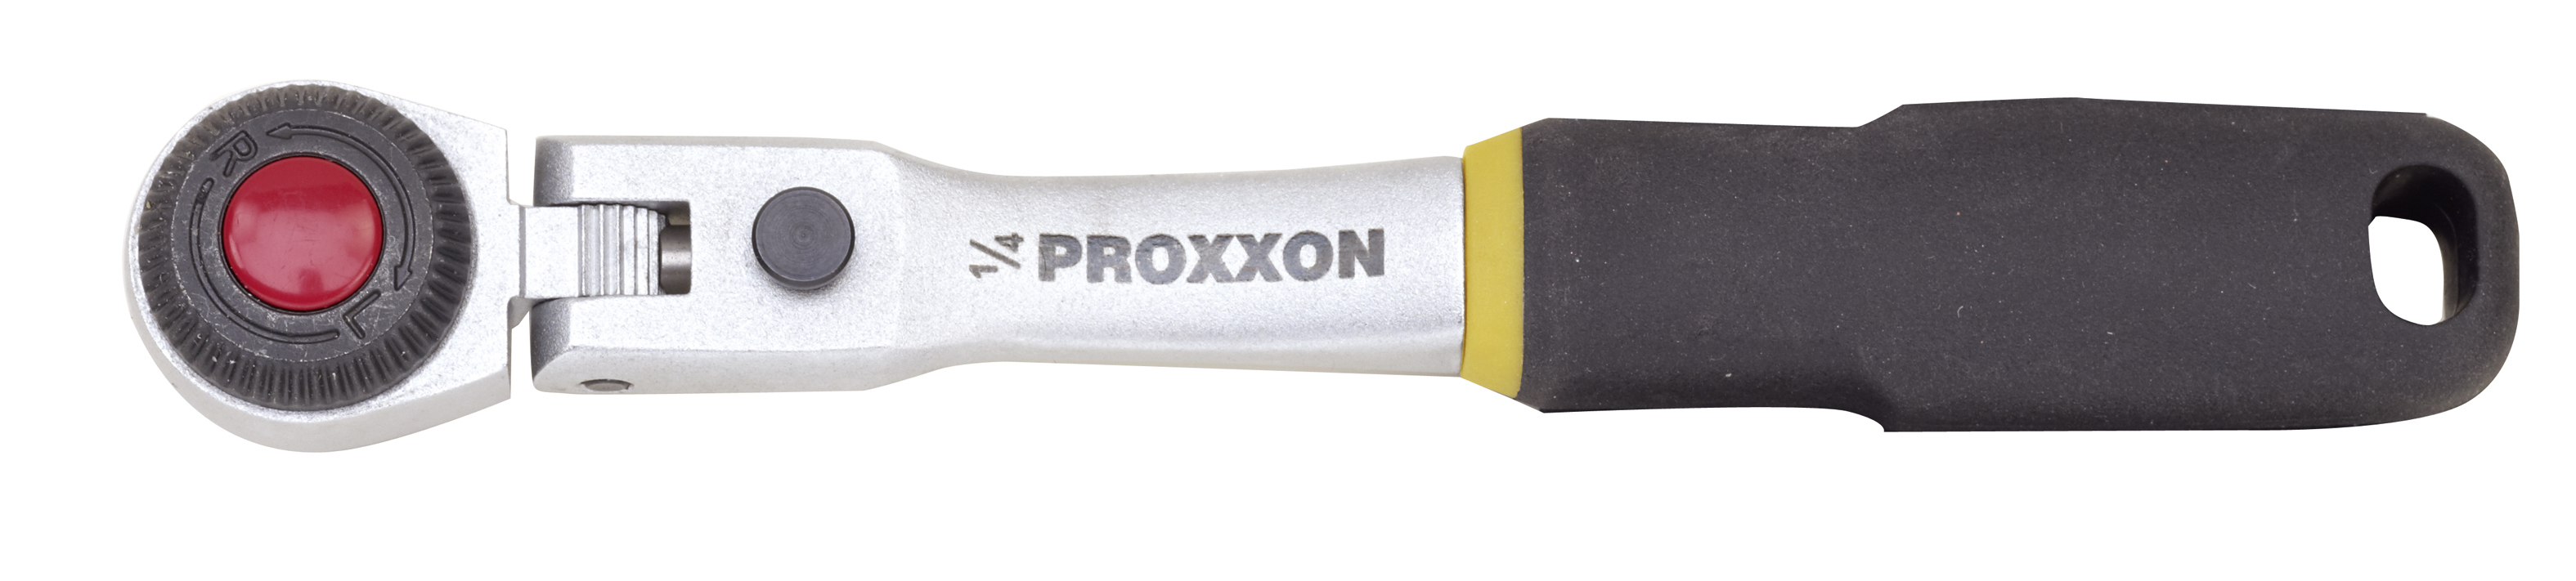 Cliquet PROXXON